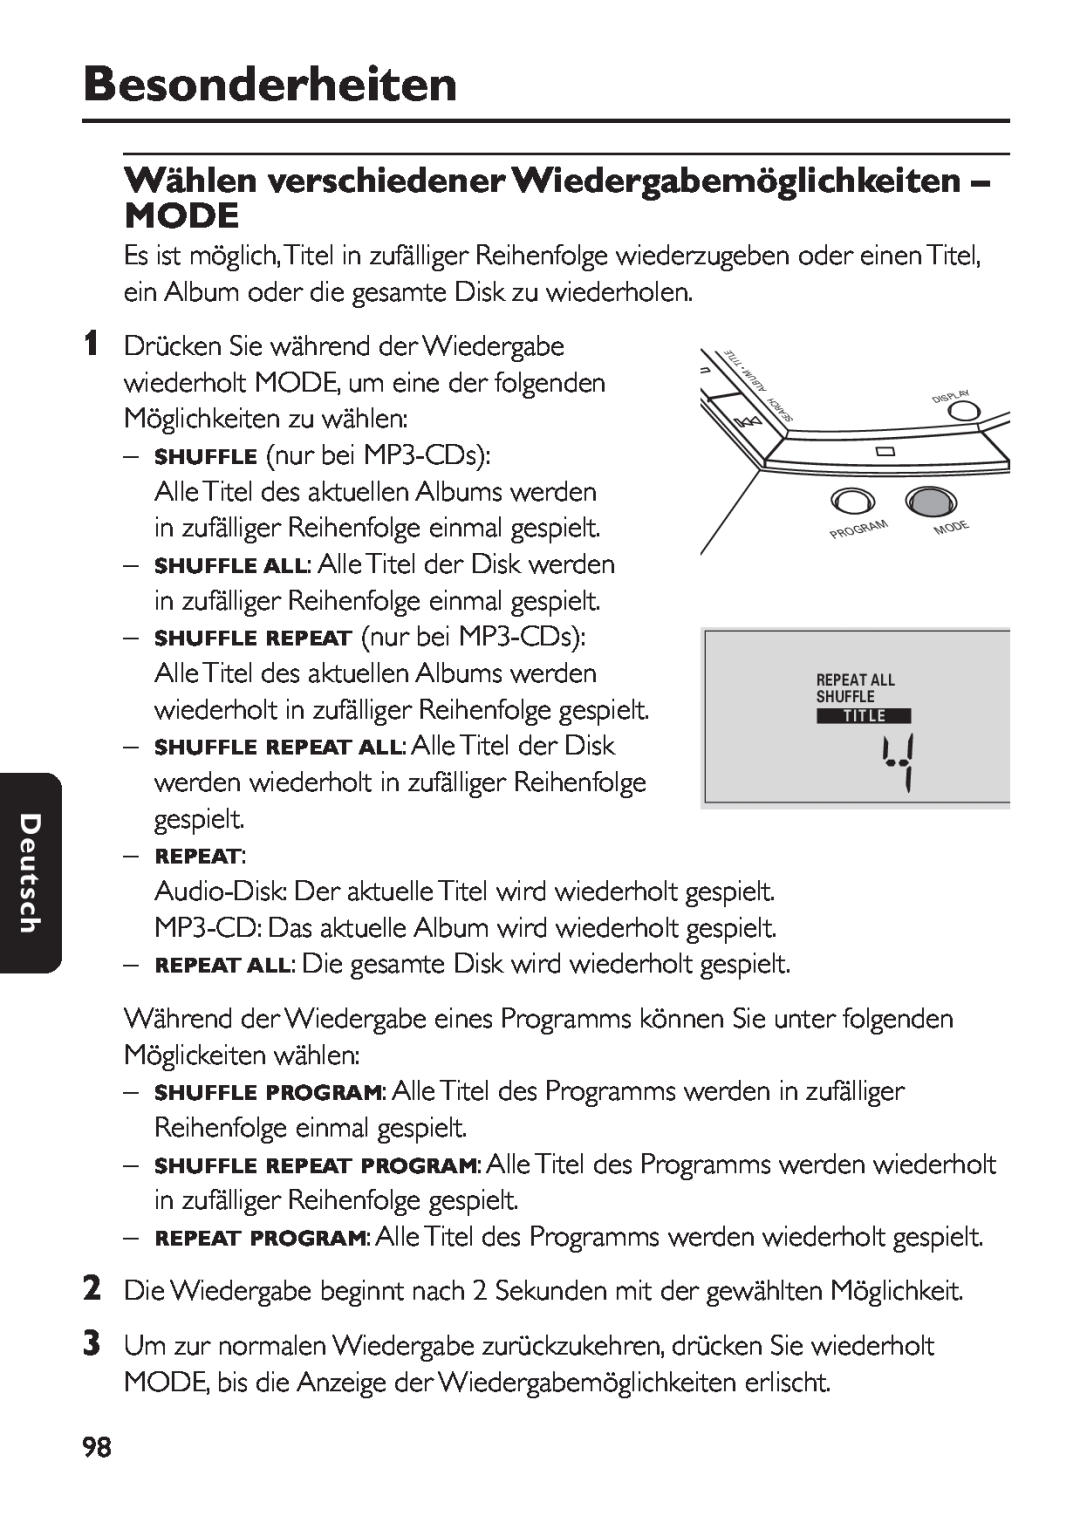 Philips EXP 501/00 manual Wählen verschiedener Wiedergabemöglichkeiten MODE, Besonderheiten, Deutsch 